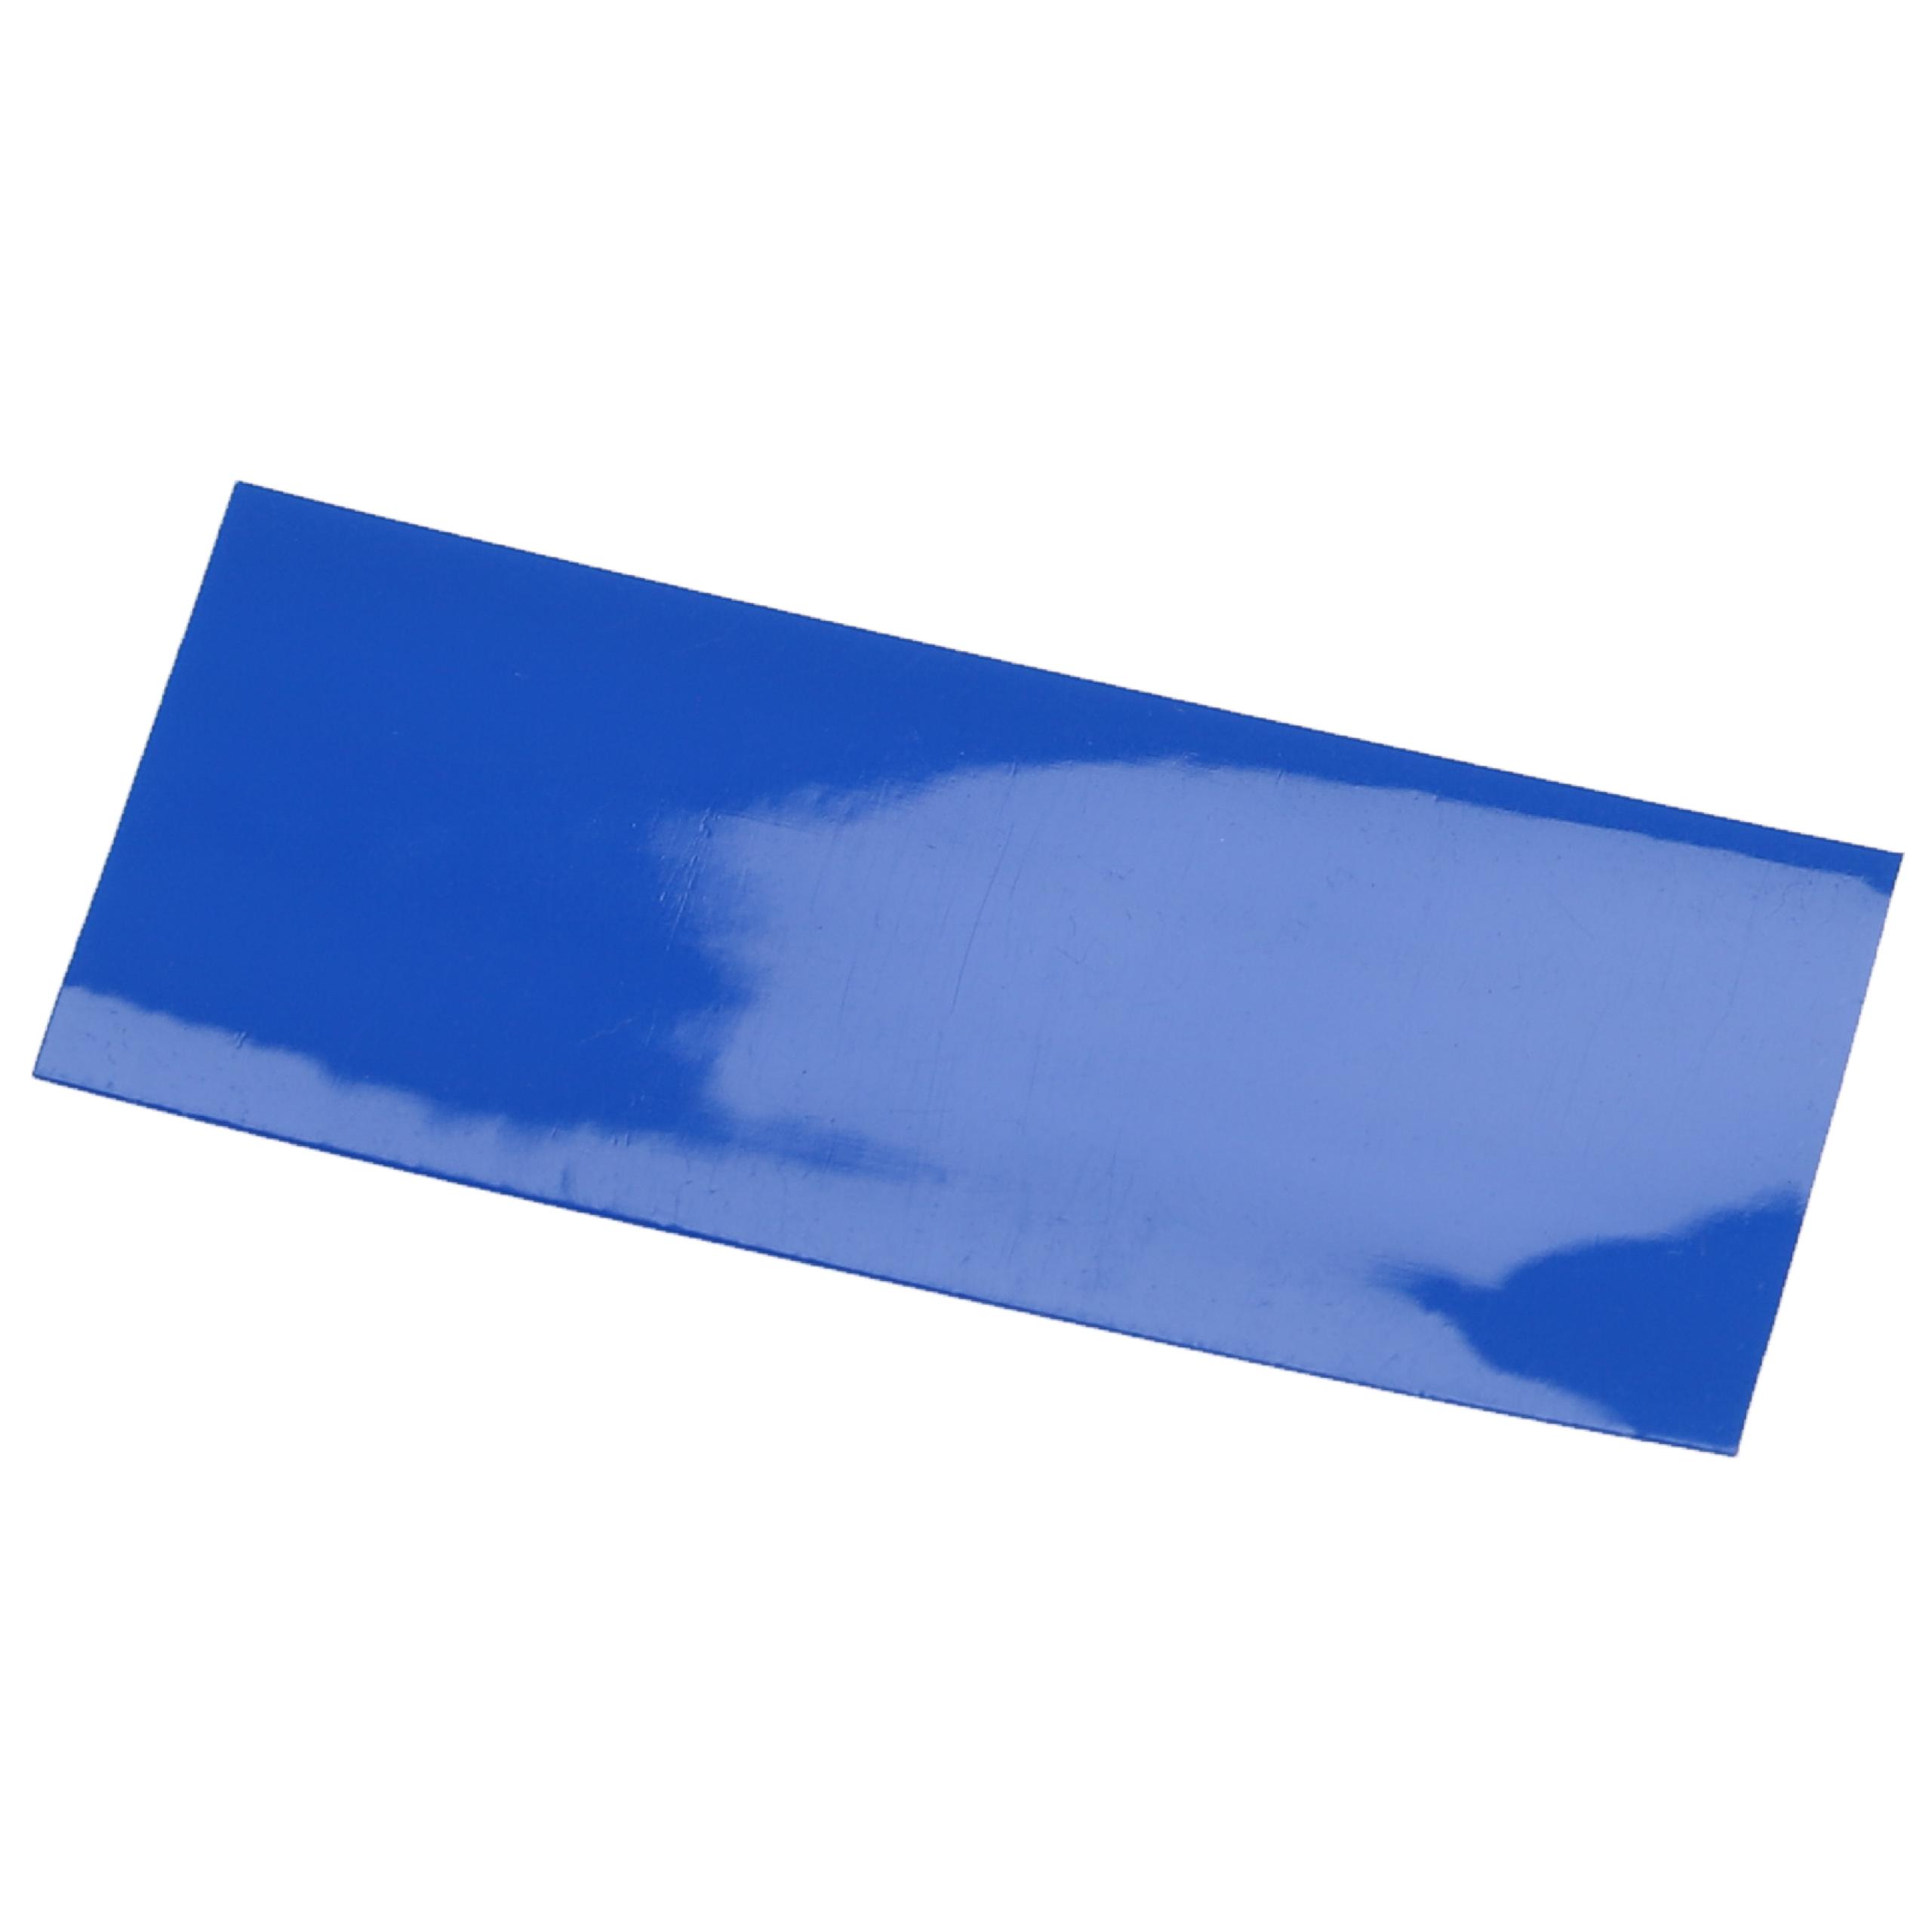 10x tubo termorretráctil compatible con celdas de batería 18650 - Láminas retráctiles azul